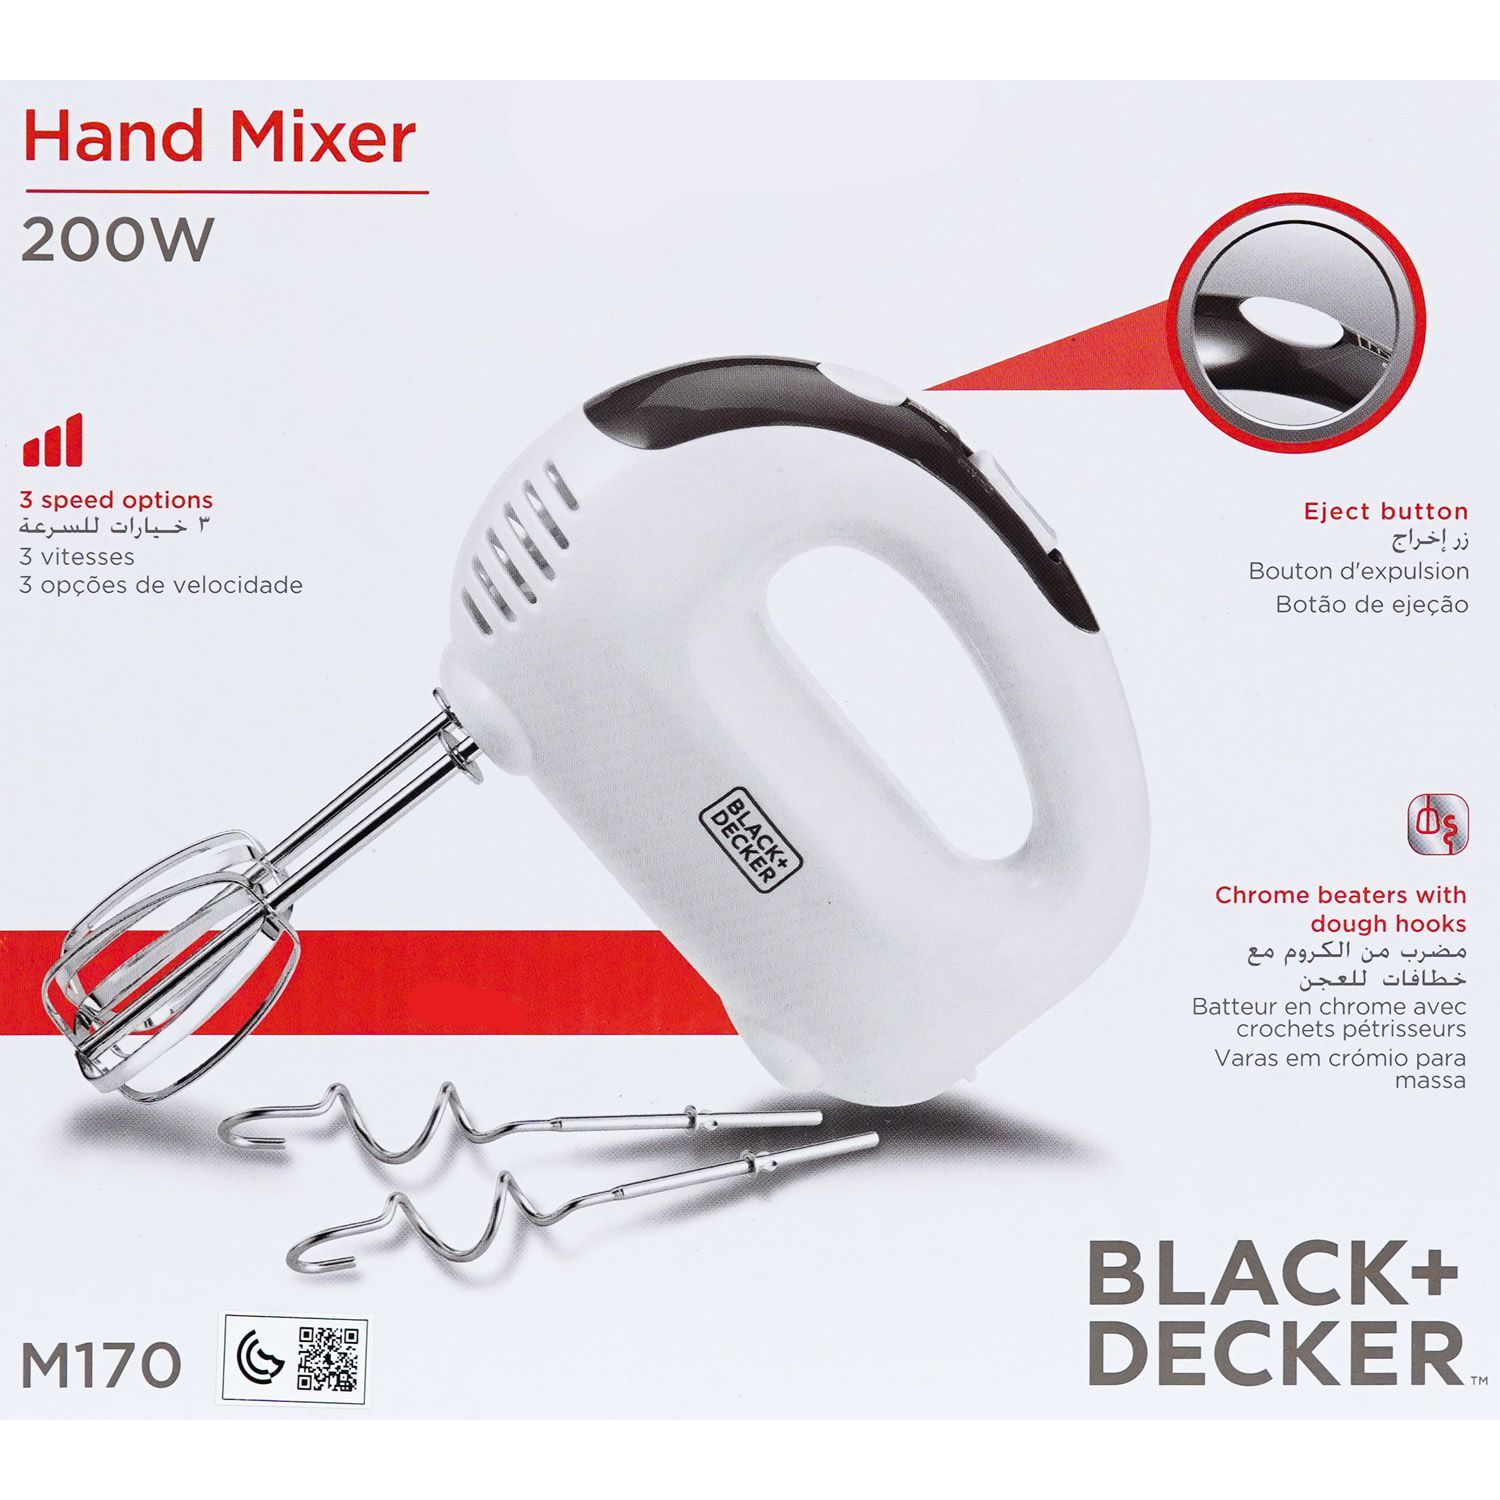 M170 - Hand Mixer